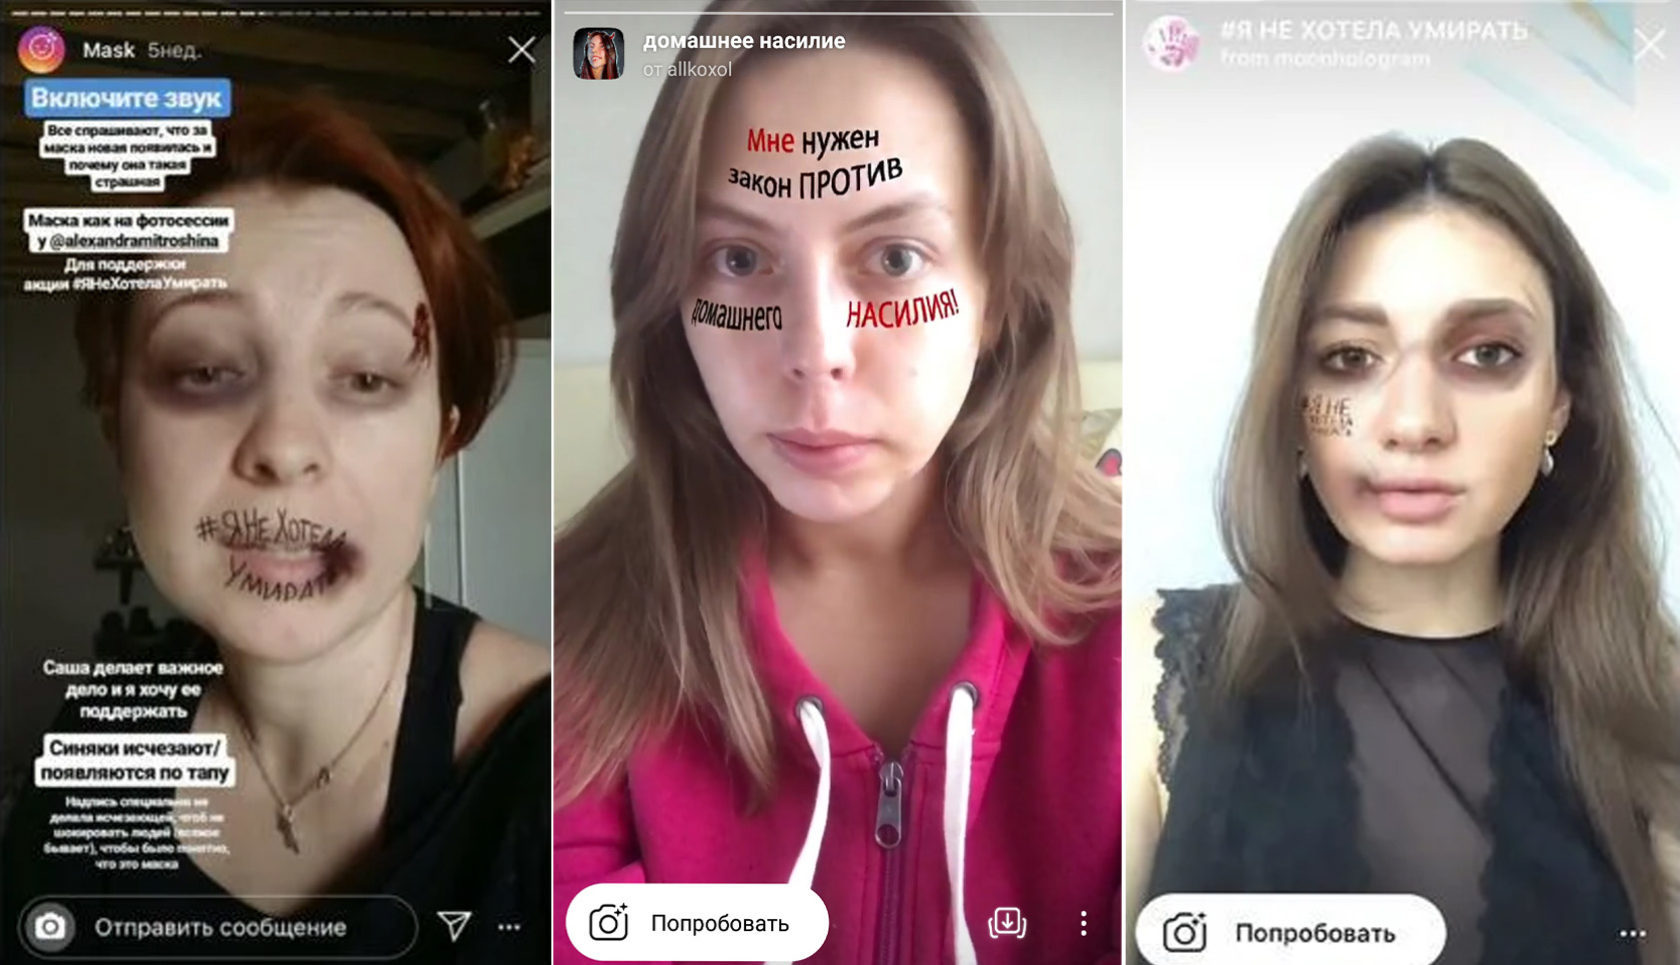 Как сделать маску в Instagram*: пошаговая инструкция